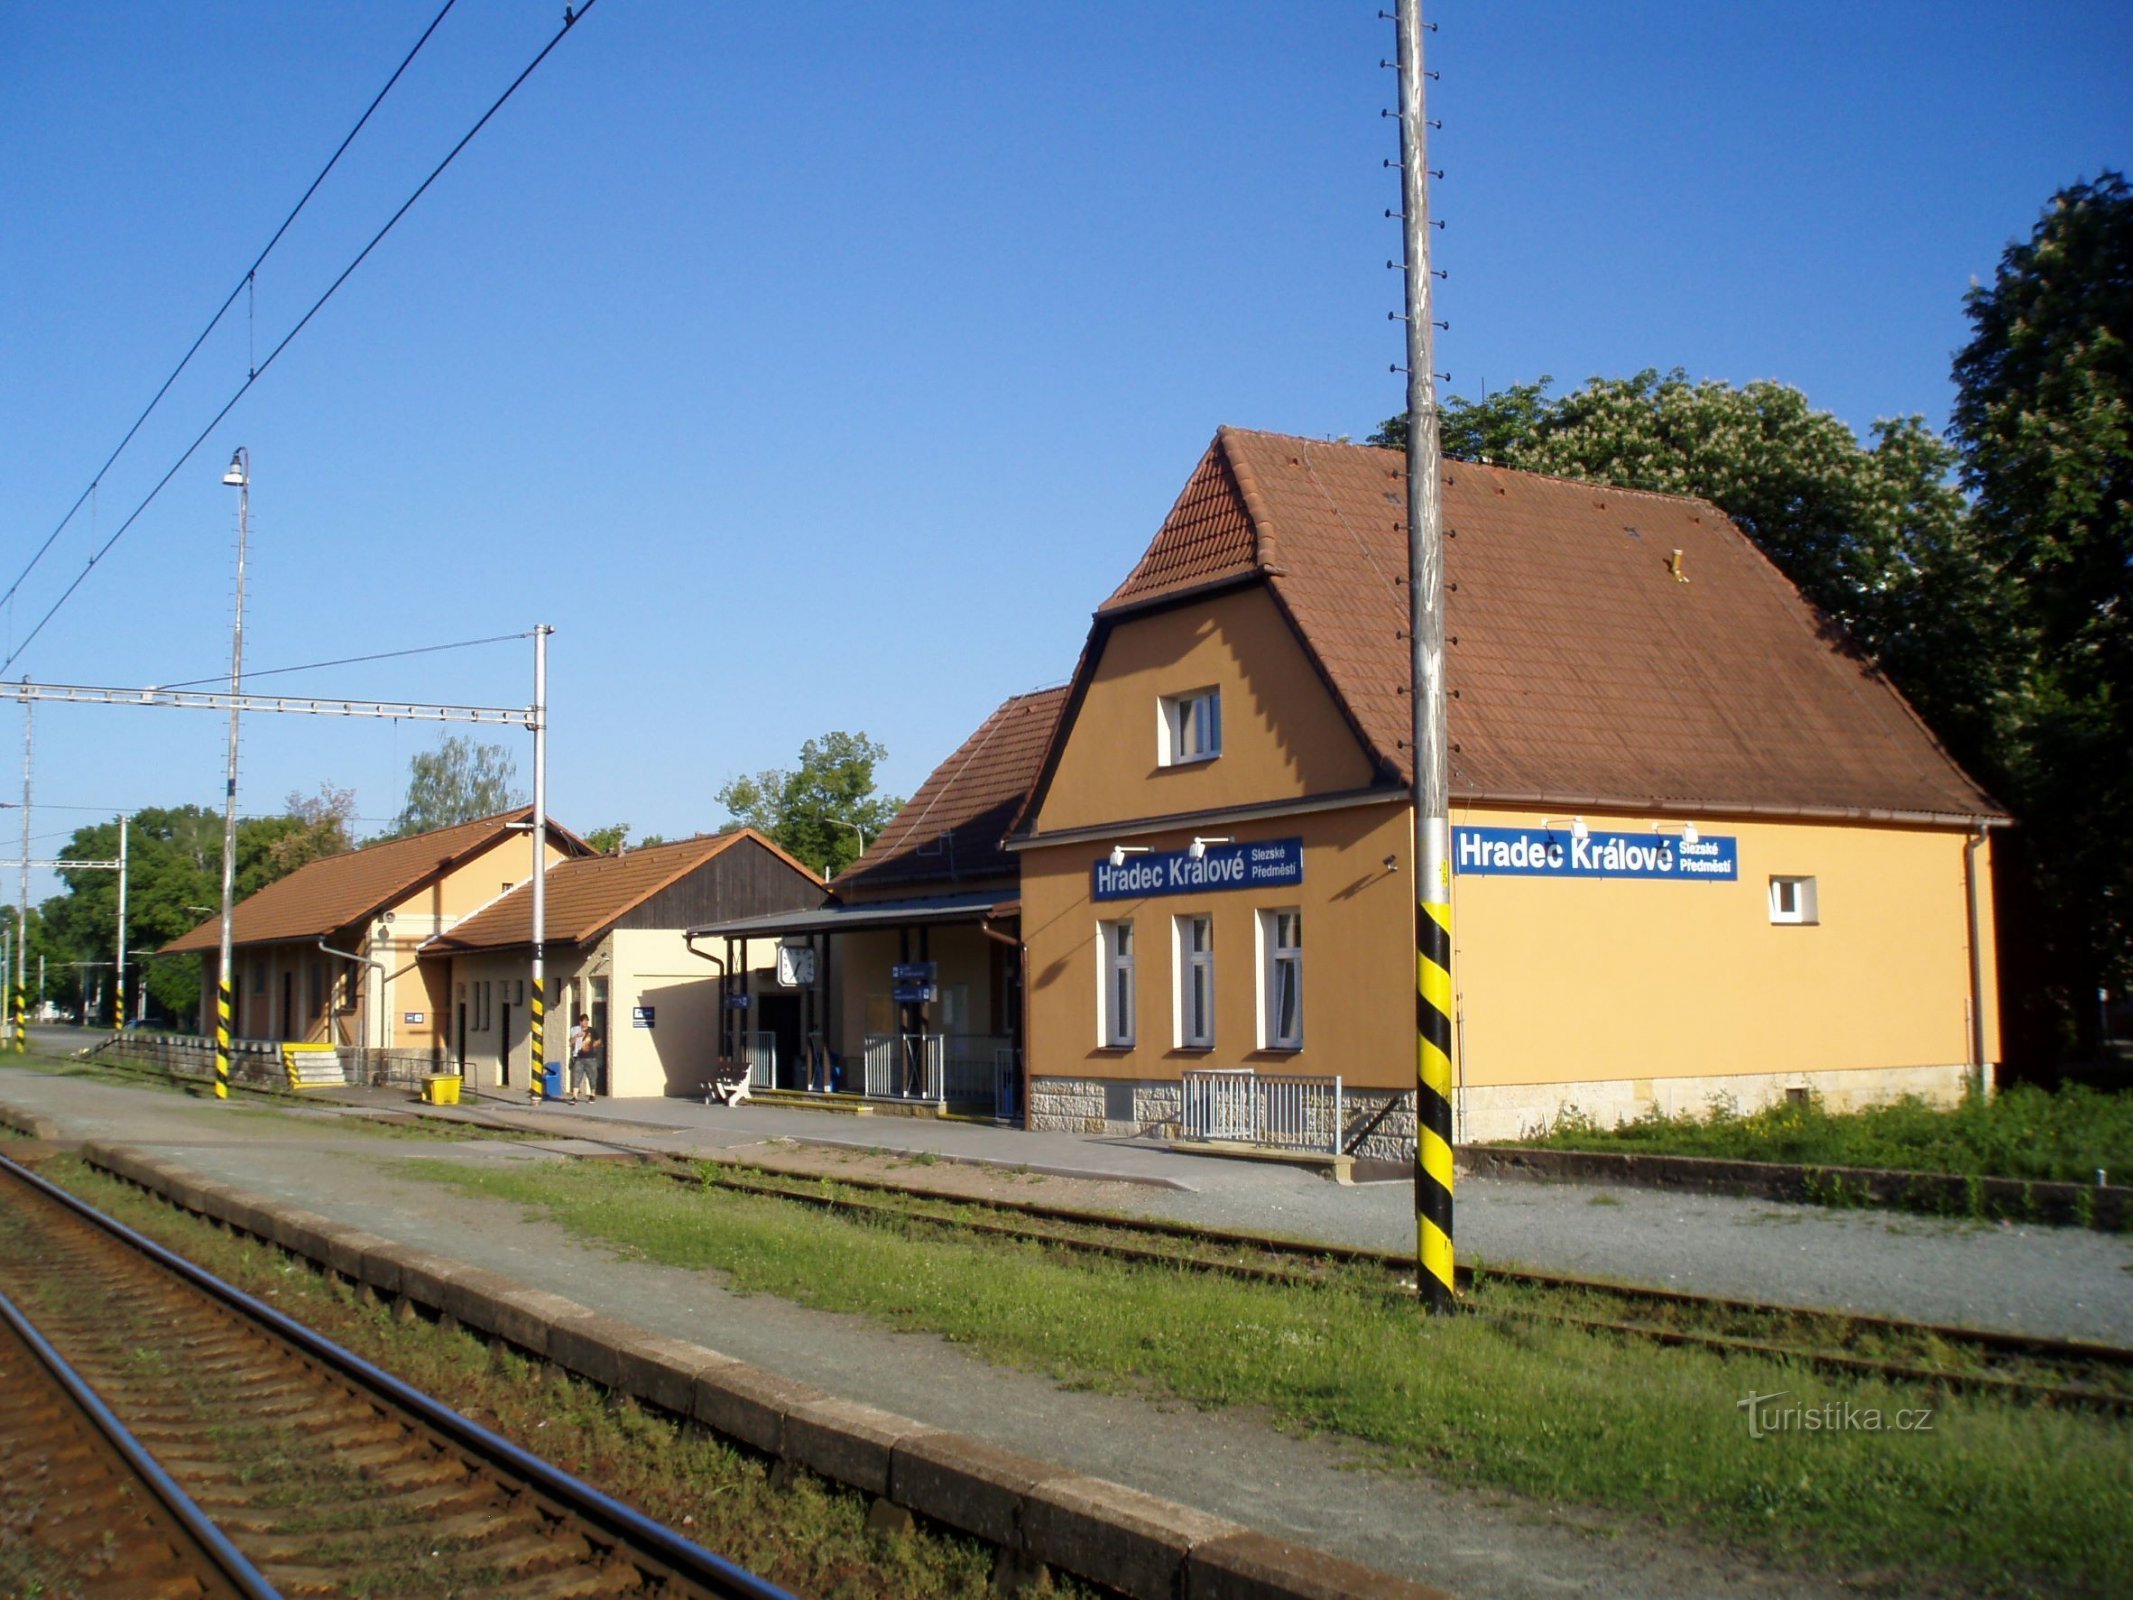 Железнодорожный вокзал в Силезском предместье (Градец Кралове, 19.5.2012)